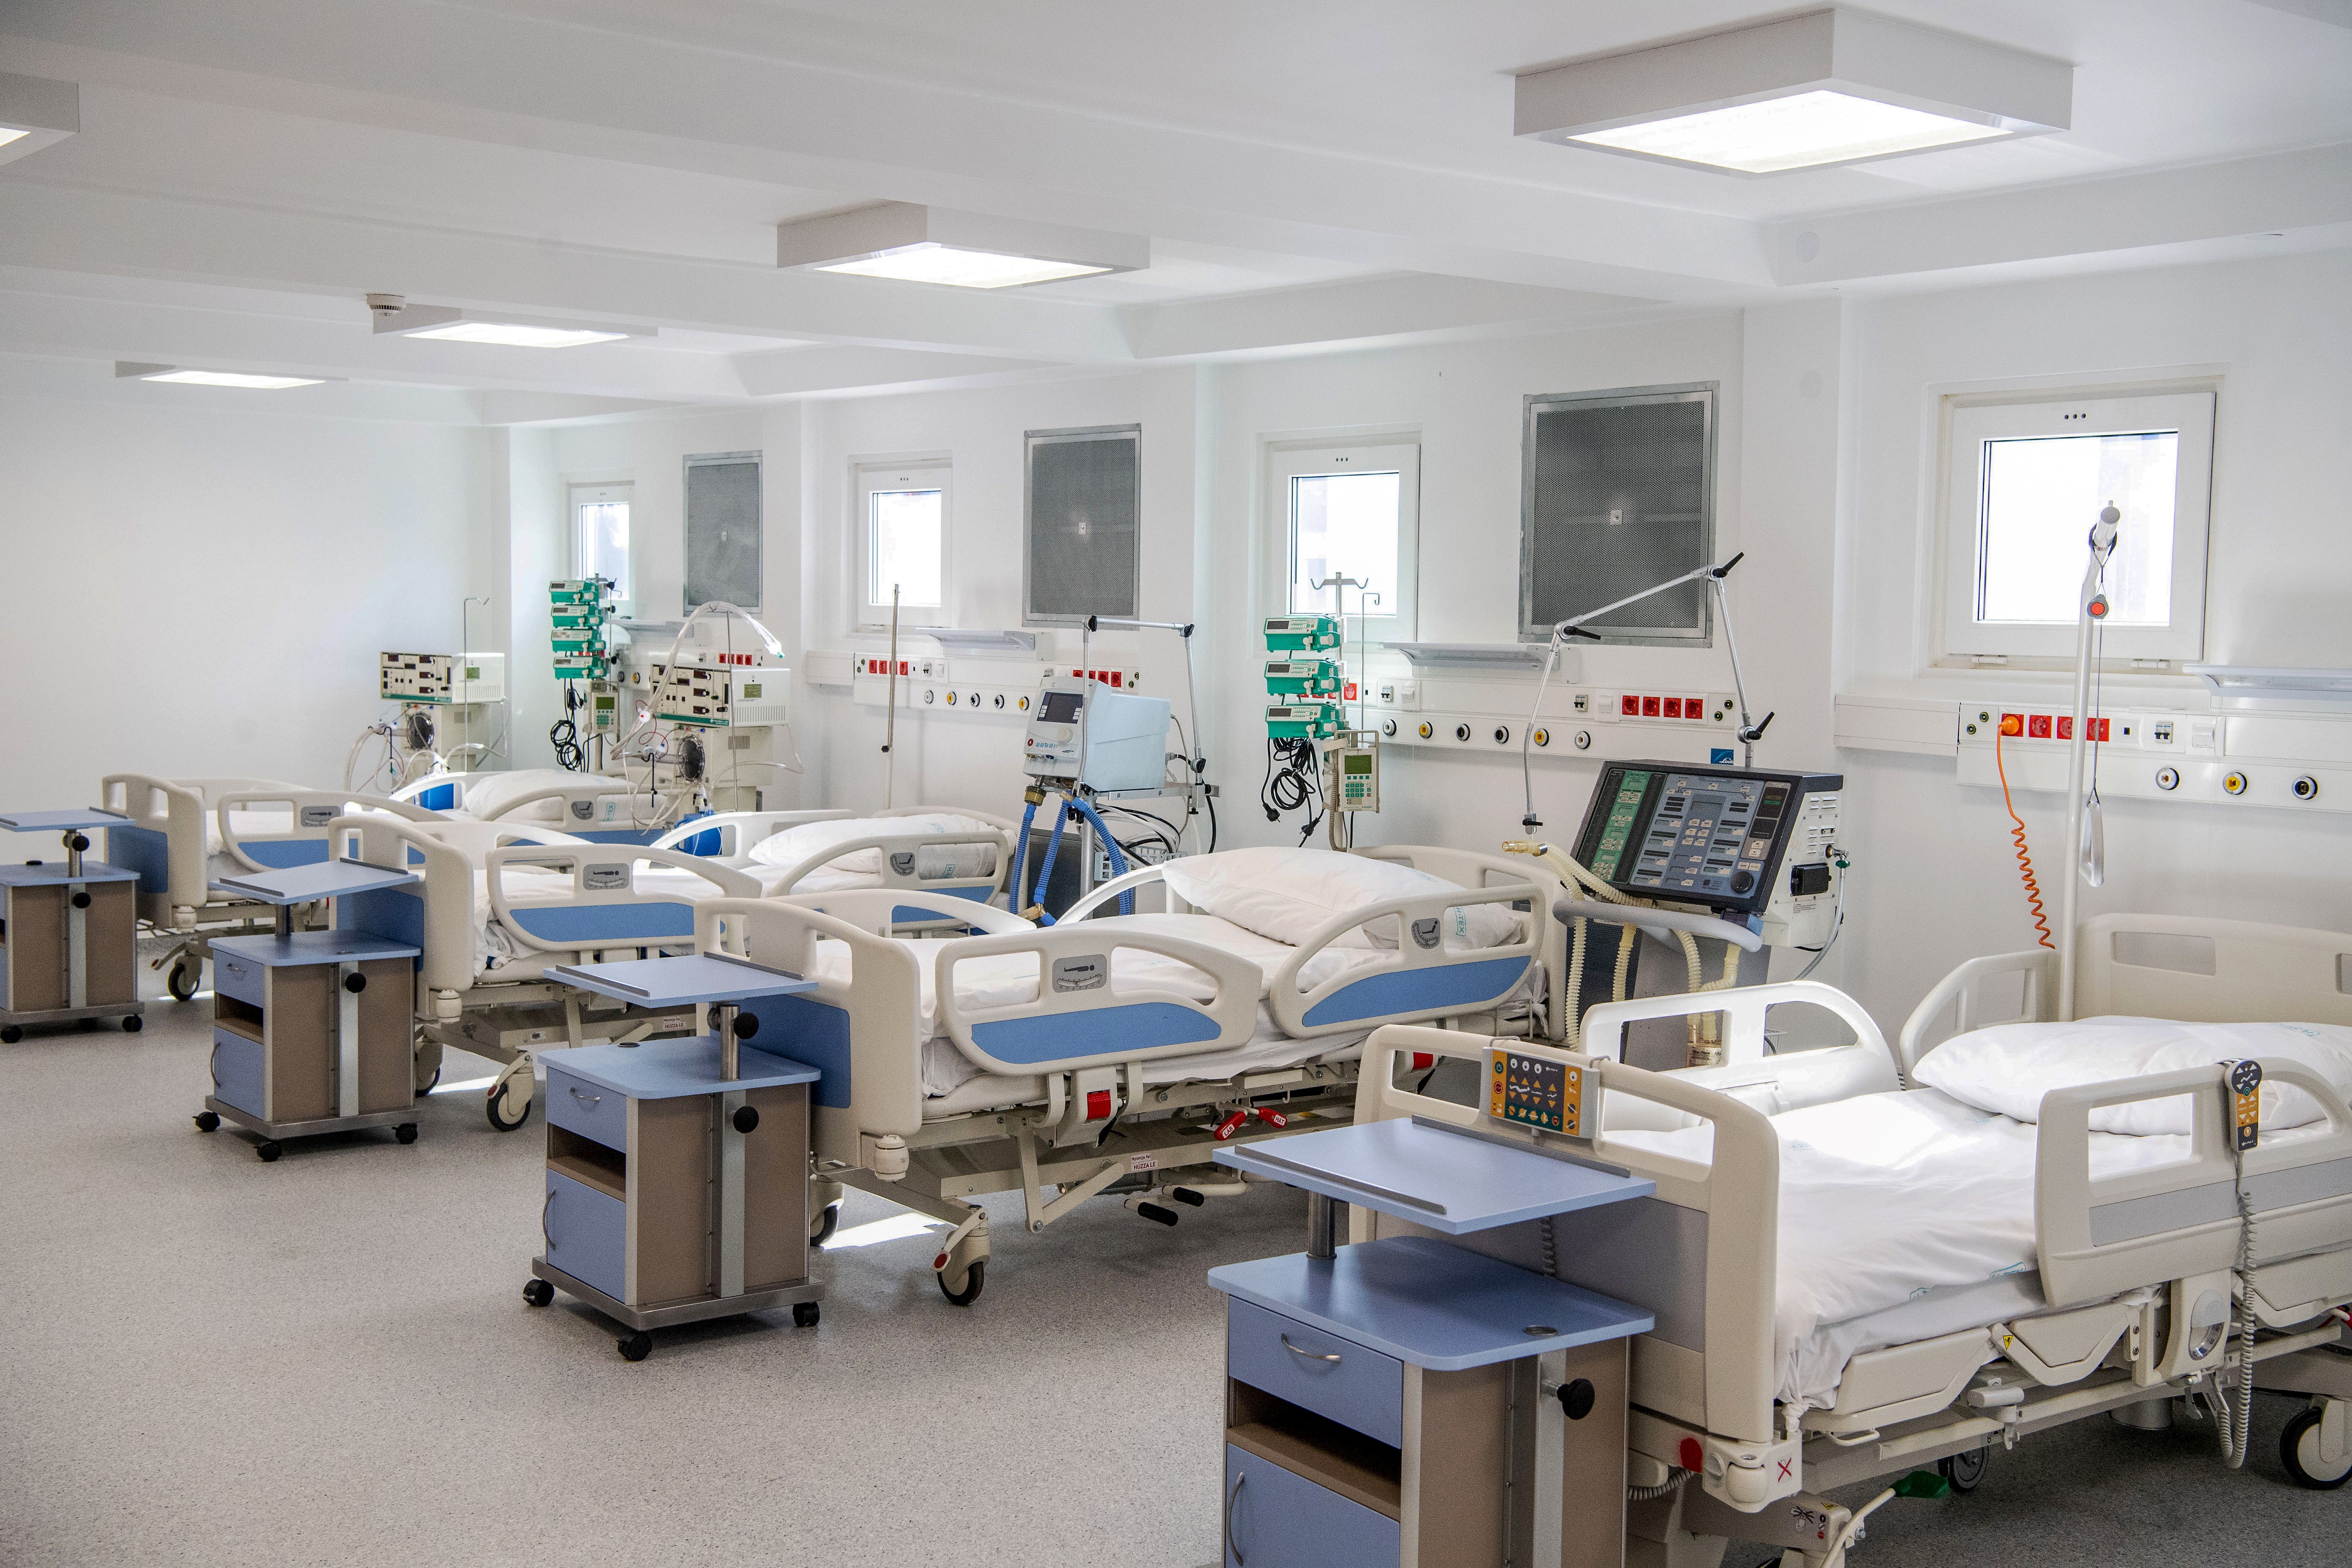 Hazug vádnak nevezte Kásler minisztériuma, hogy a kórházak "kirakják az öreg embereket meghalni"